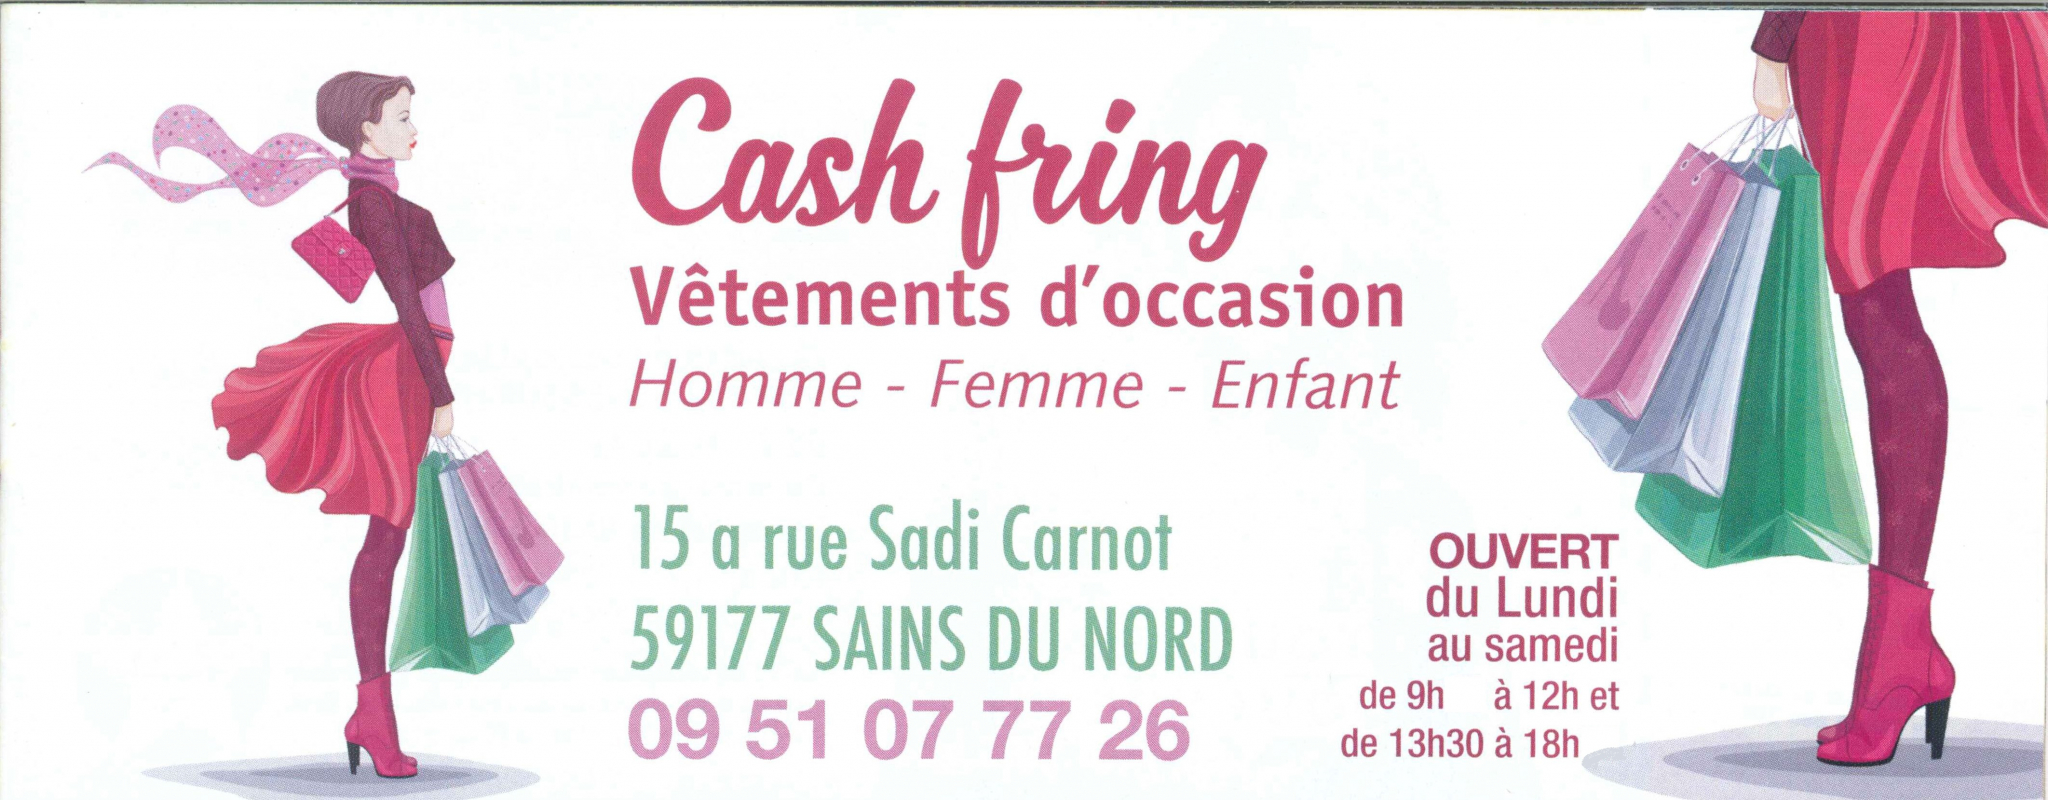 cash-fring.JPG